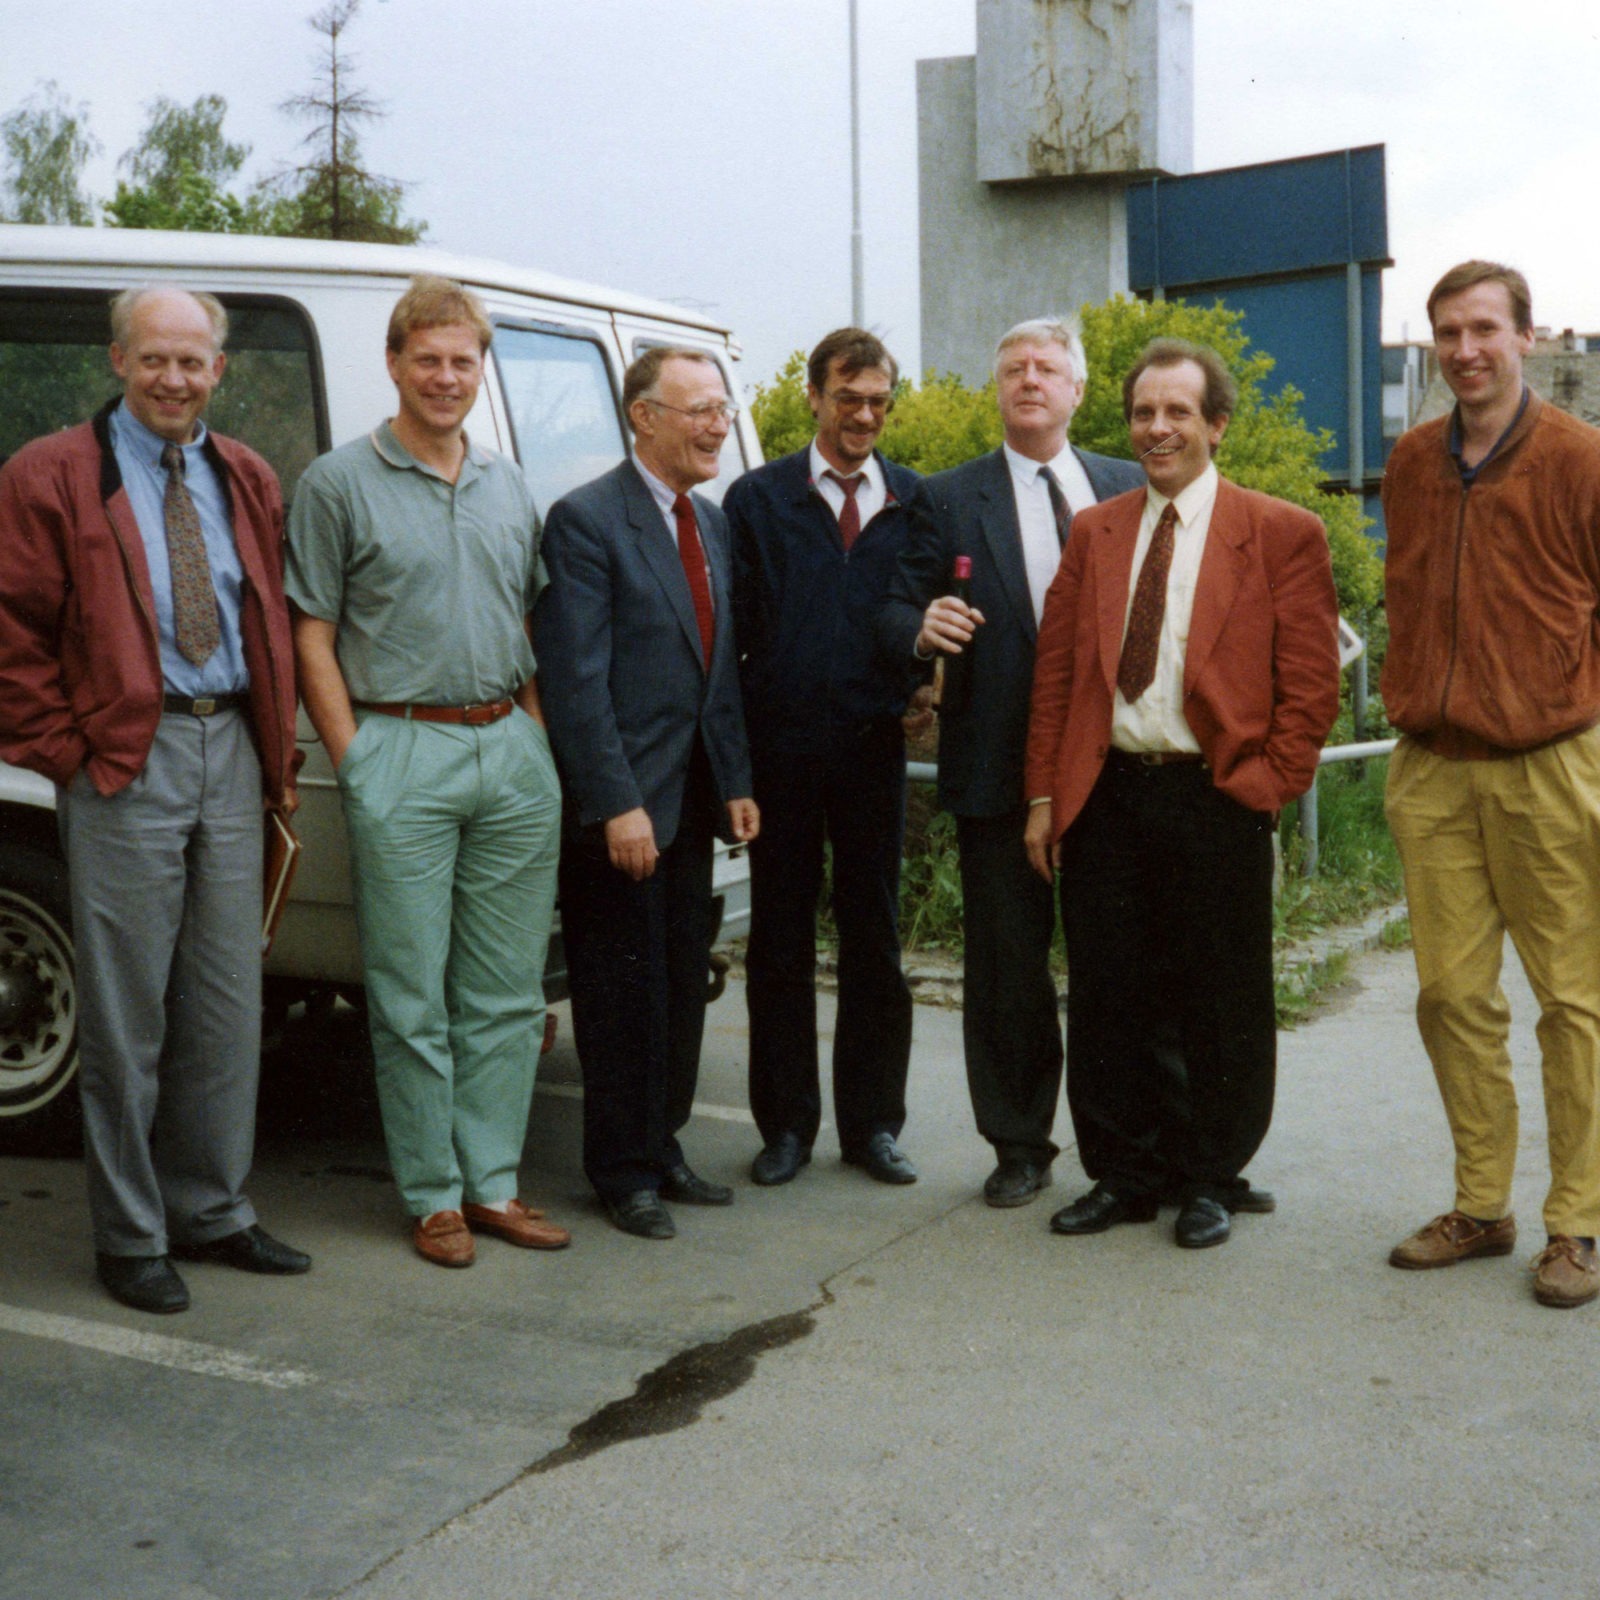 Sieben Männer in formeller Kleidung der 1980er stehen lachend auf einem Fabrikparkplatz.